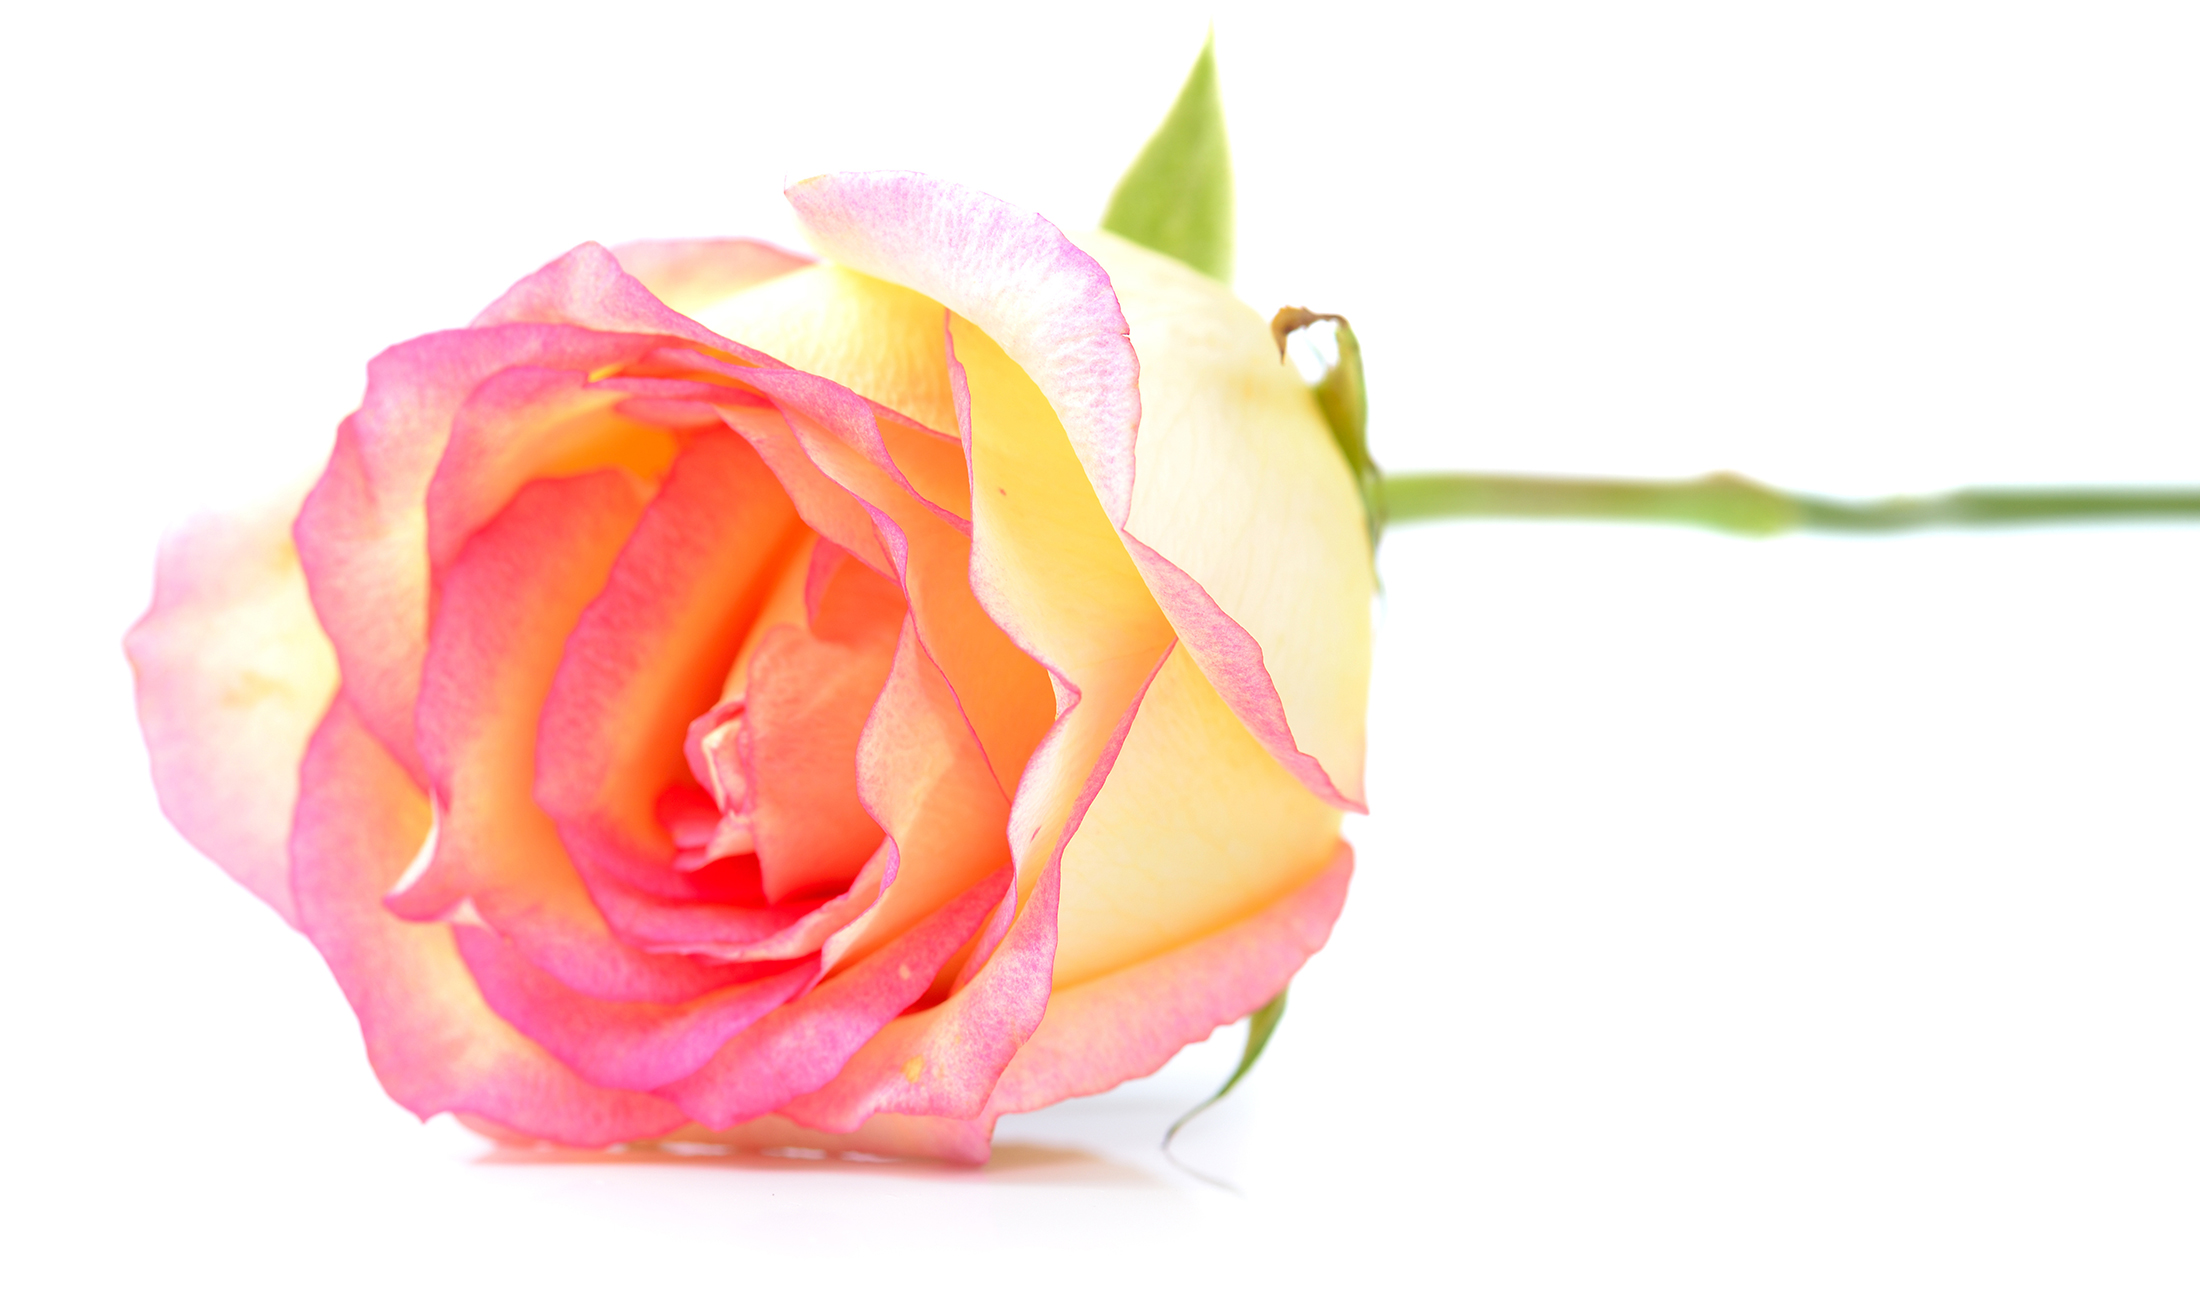 La Vie en Rose - We've got spring on our minds! 💐 Let's kiss the